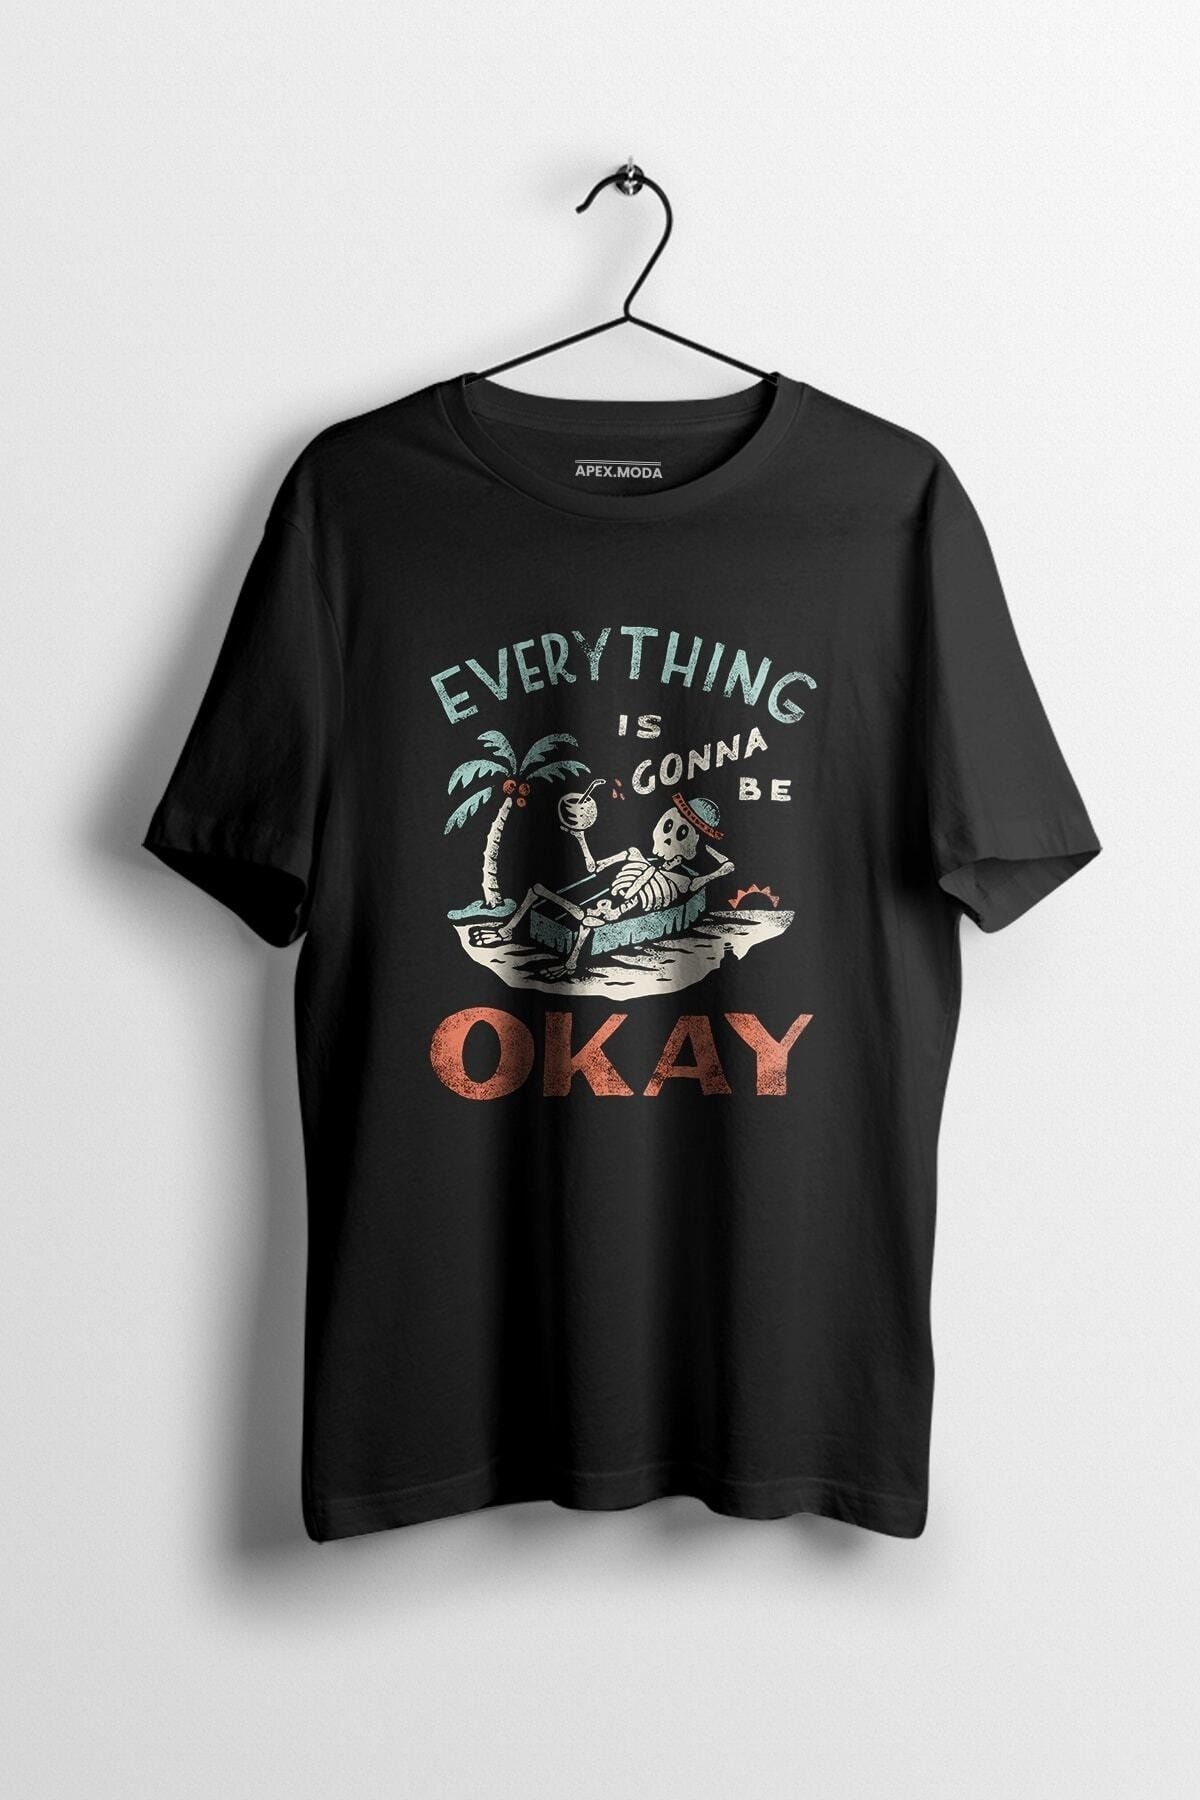 WePOD Erkek T-shirt Everything Is Gonna Be Okay Baskılı Baskılı Siyah Kısa Kollu Unisex Tişört